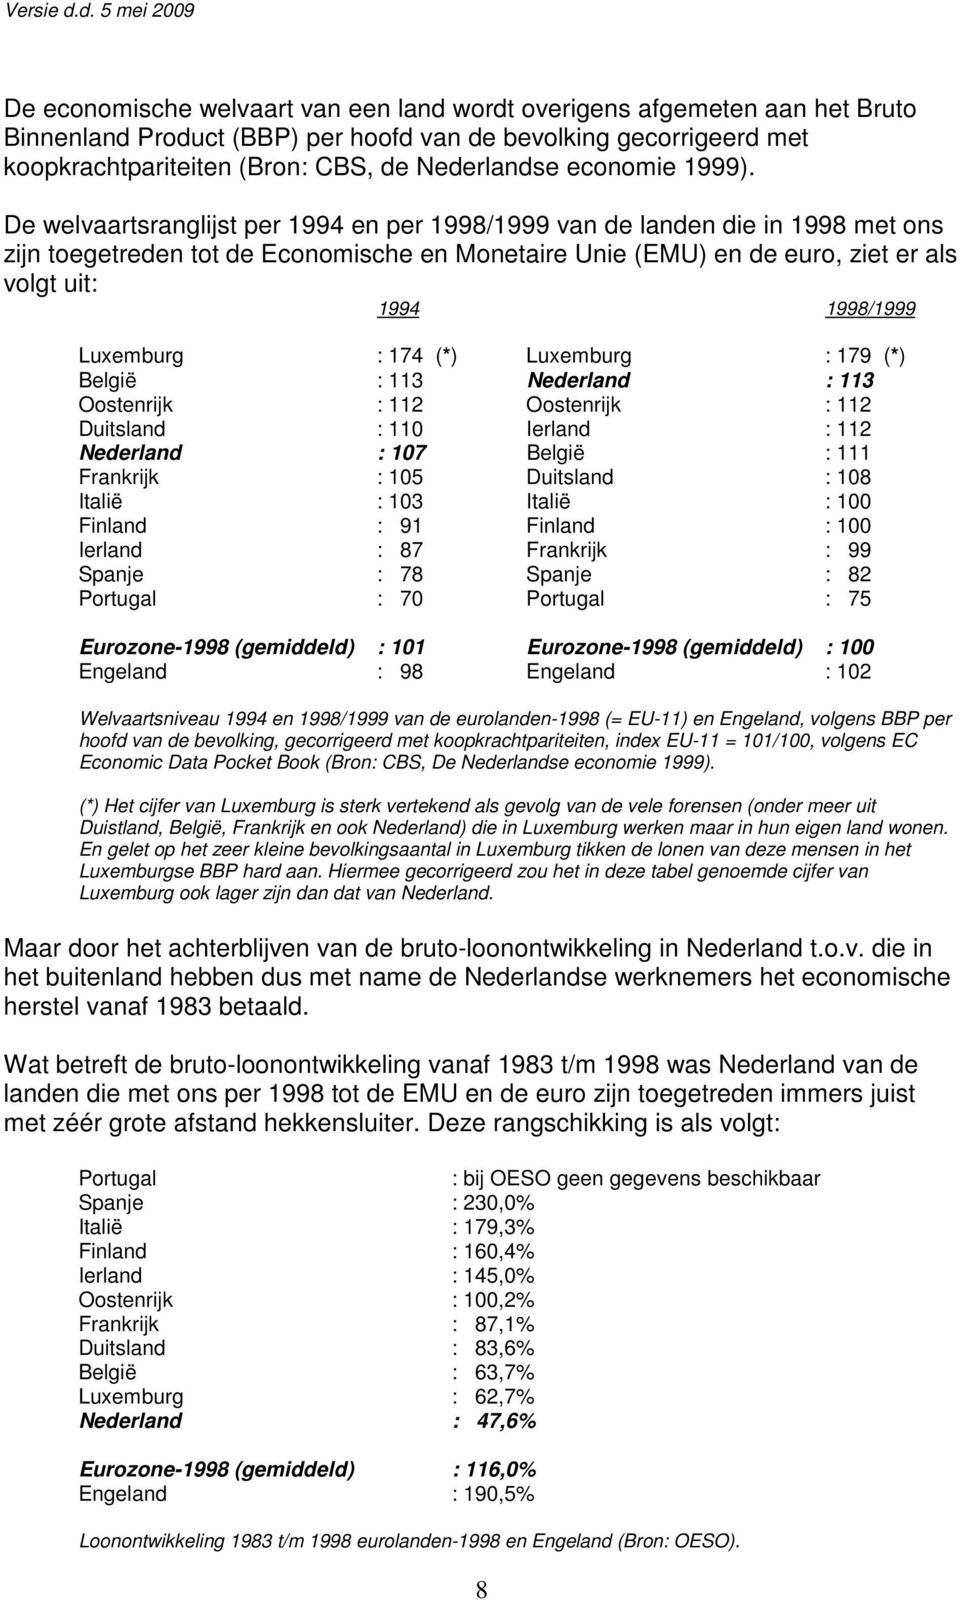 De welvaartsranglijst per 1994 en per 1998/1999 van de landen die in 1998 met ons zijn toegetreden tot de Economische en Monetaire Unie (EMU) en de euro, ziet er als volgt uit: 1994 1998/1999